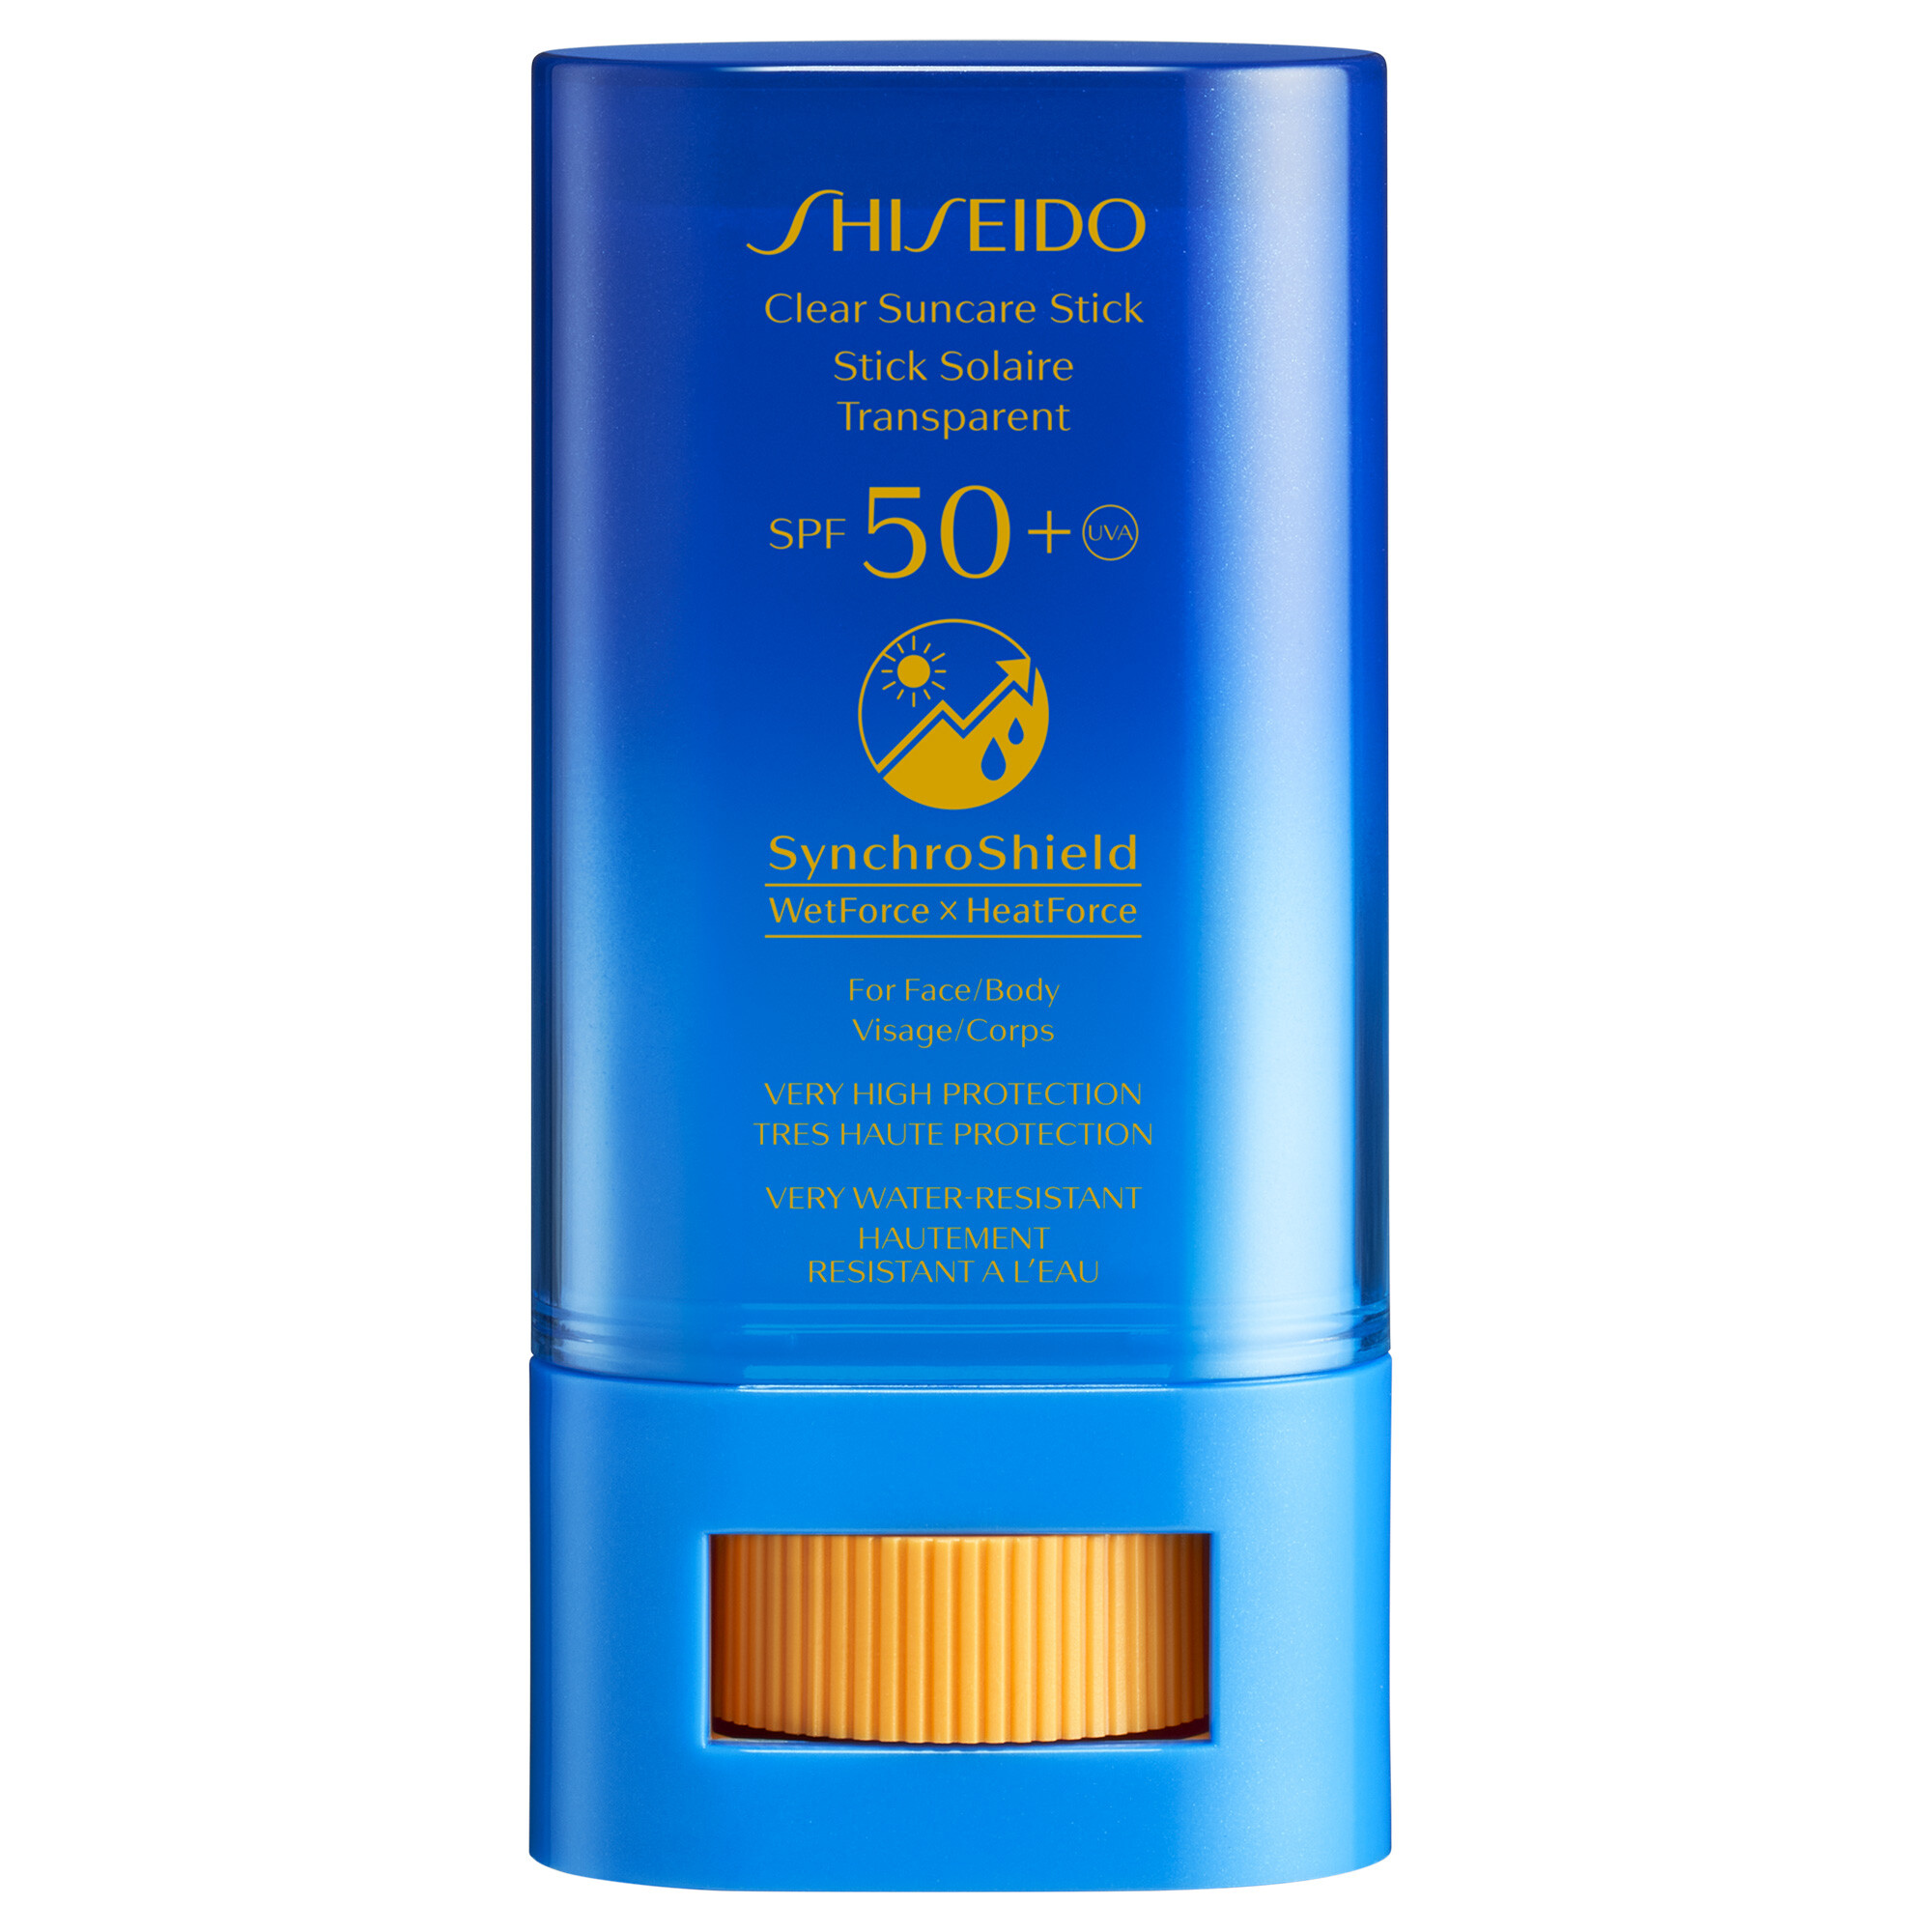 Sonnenschutz Shiseido Clear Suncare Stick SPF50+ 20g bestellen